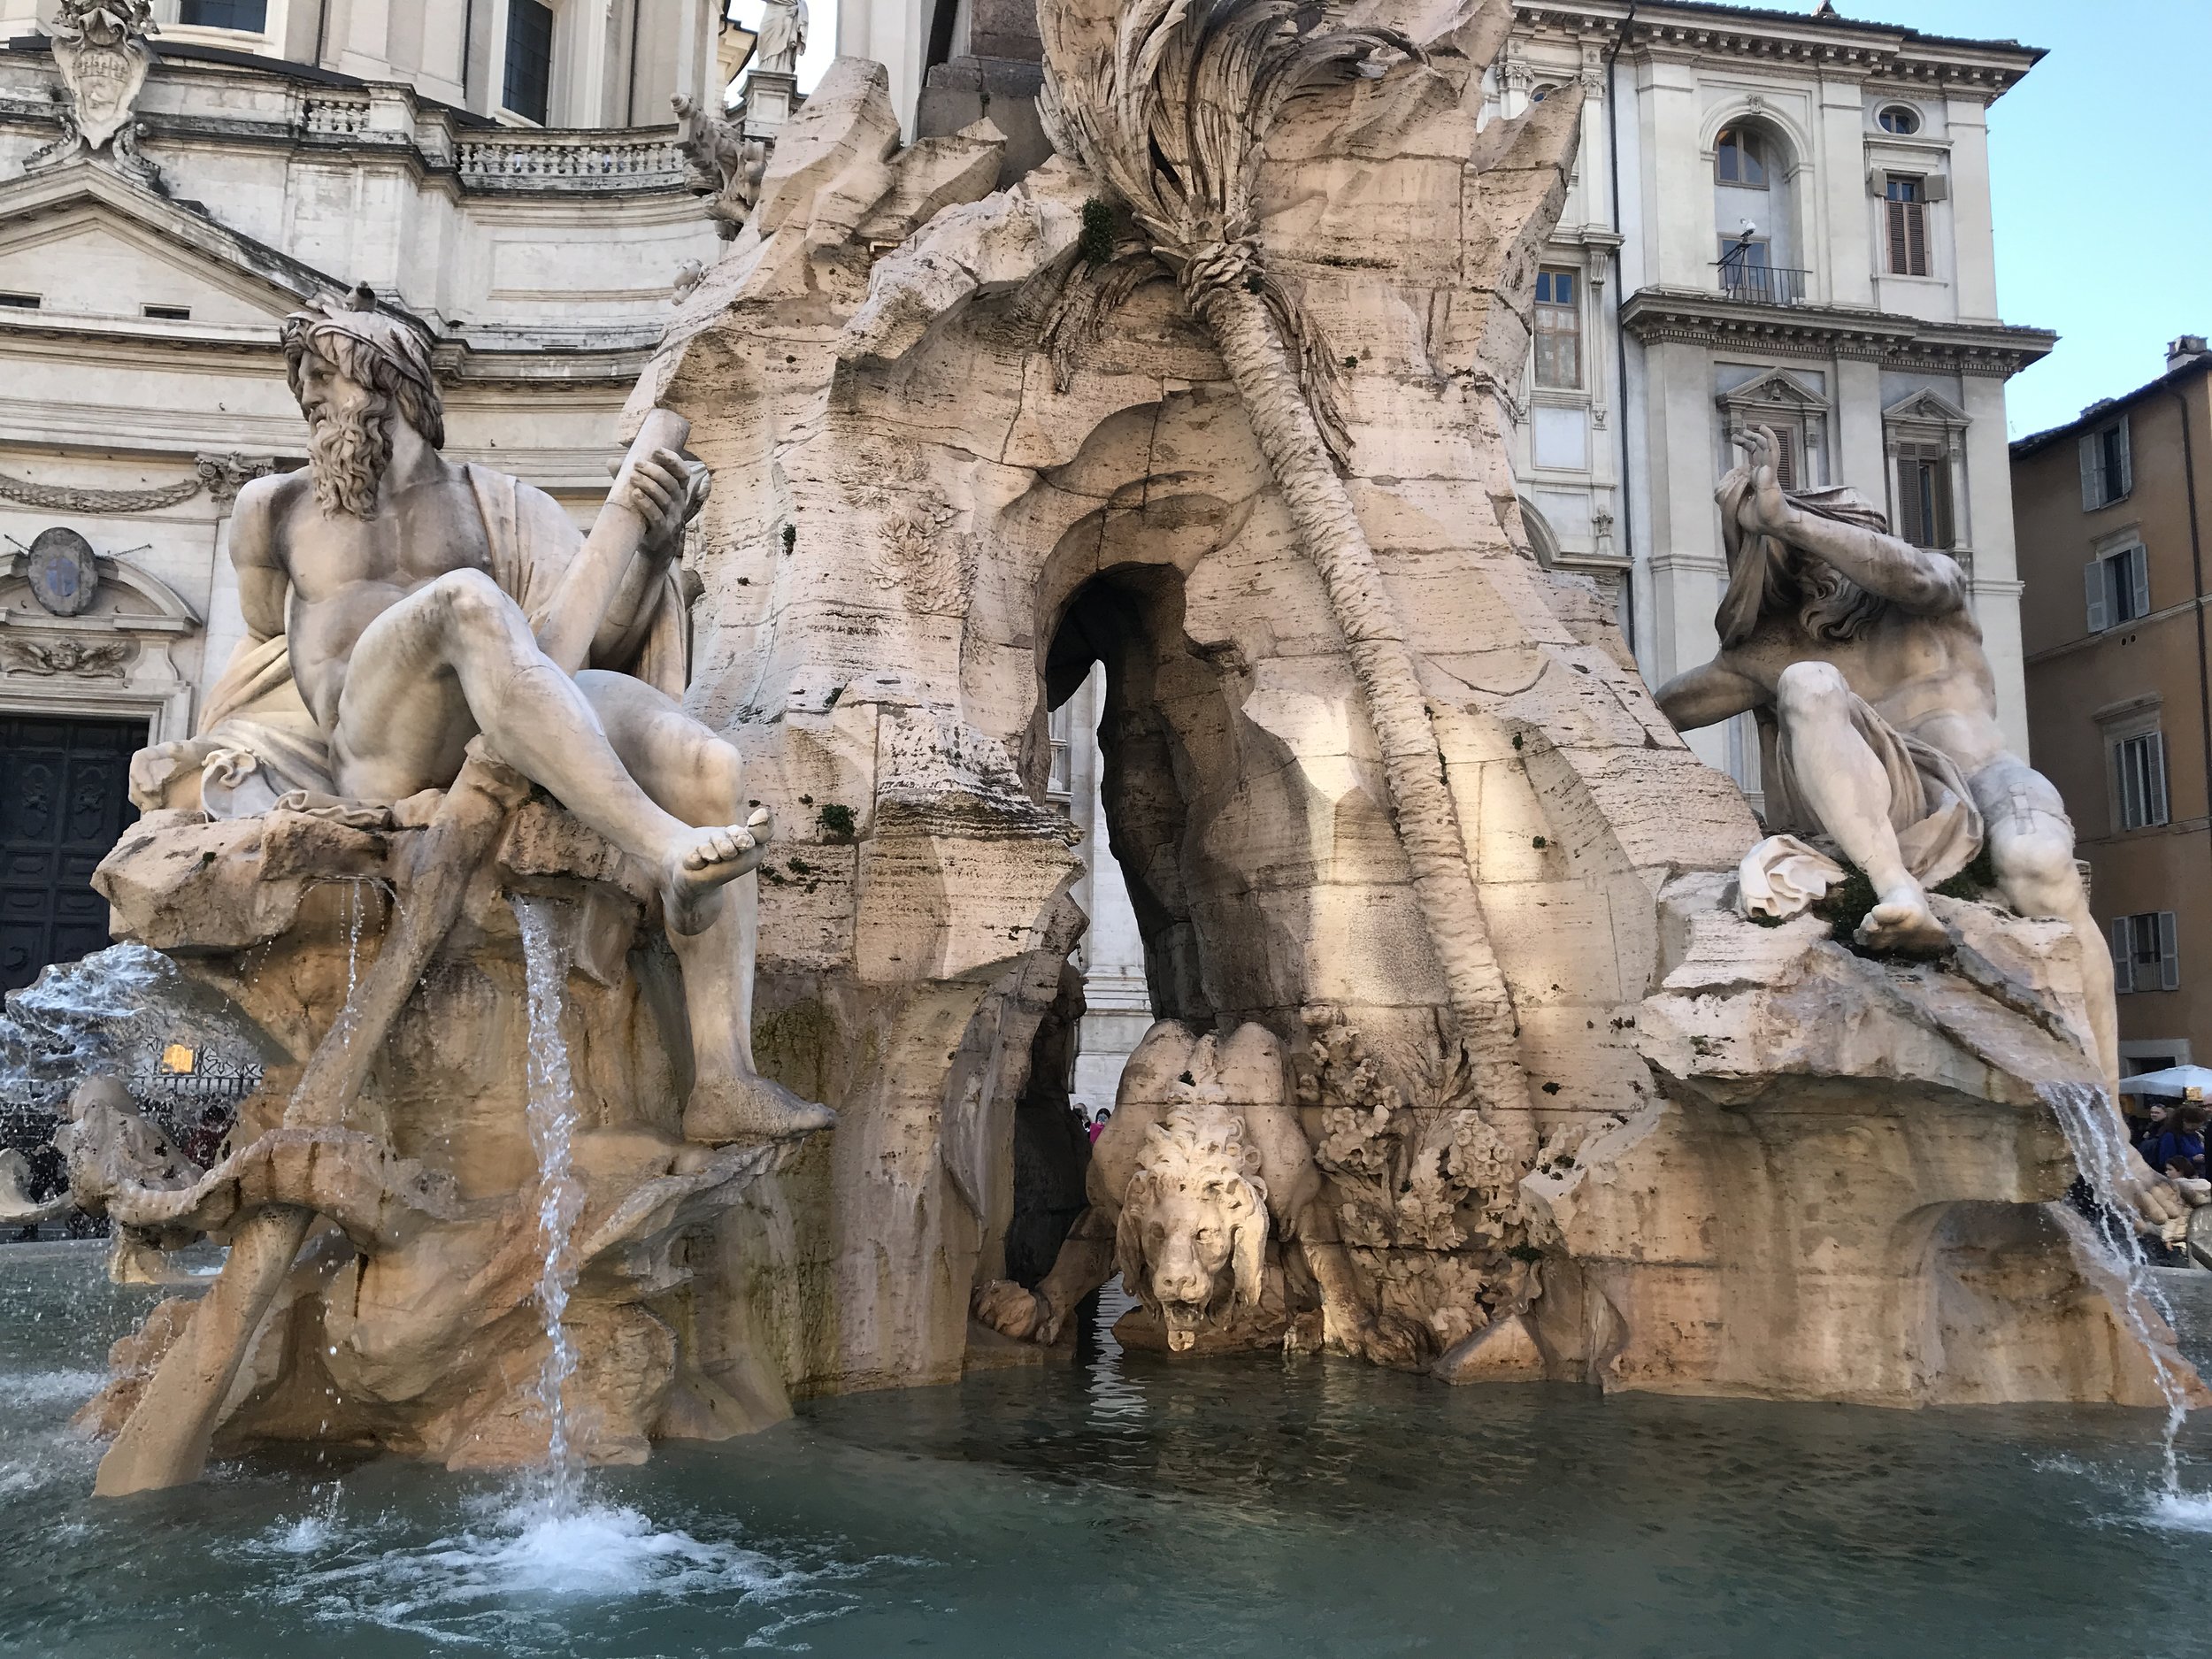 Fontana del Nettuno (The Fountain of Neptune)